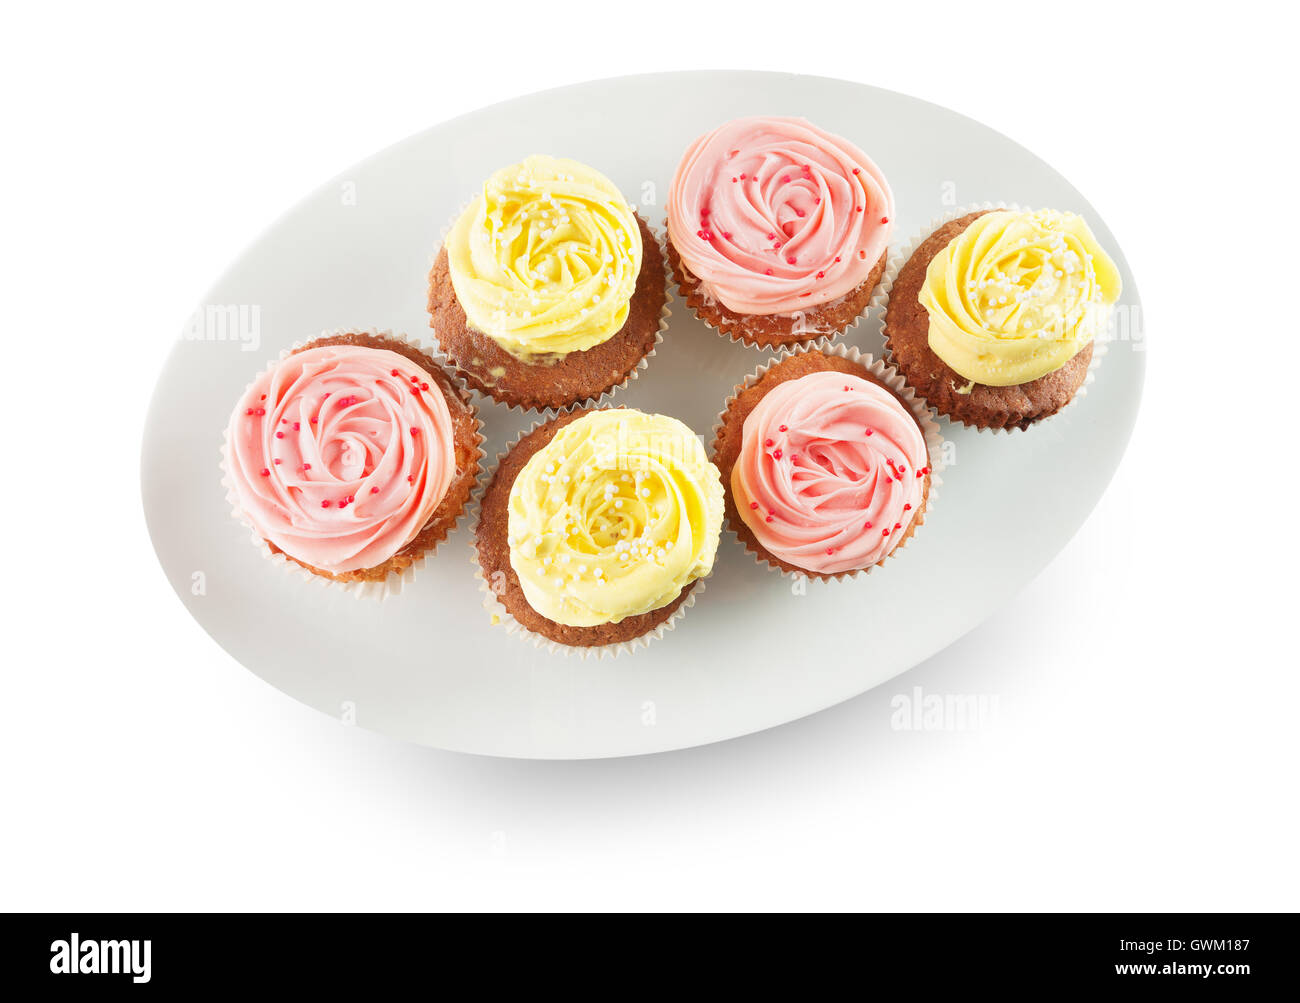 Cupcakes con crema en la placa blanca. Foto de stock